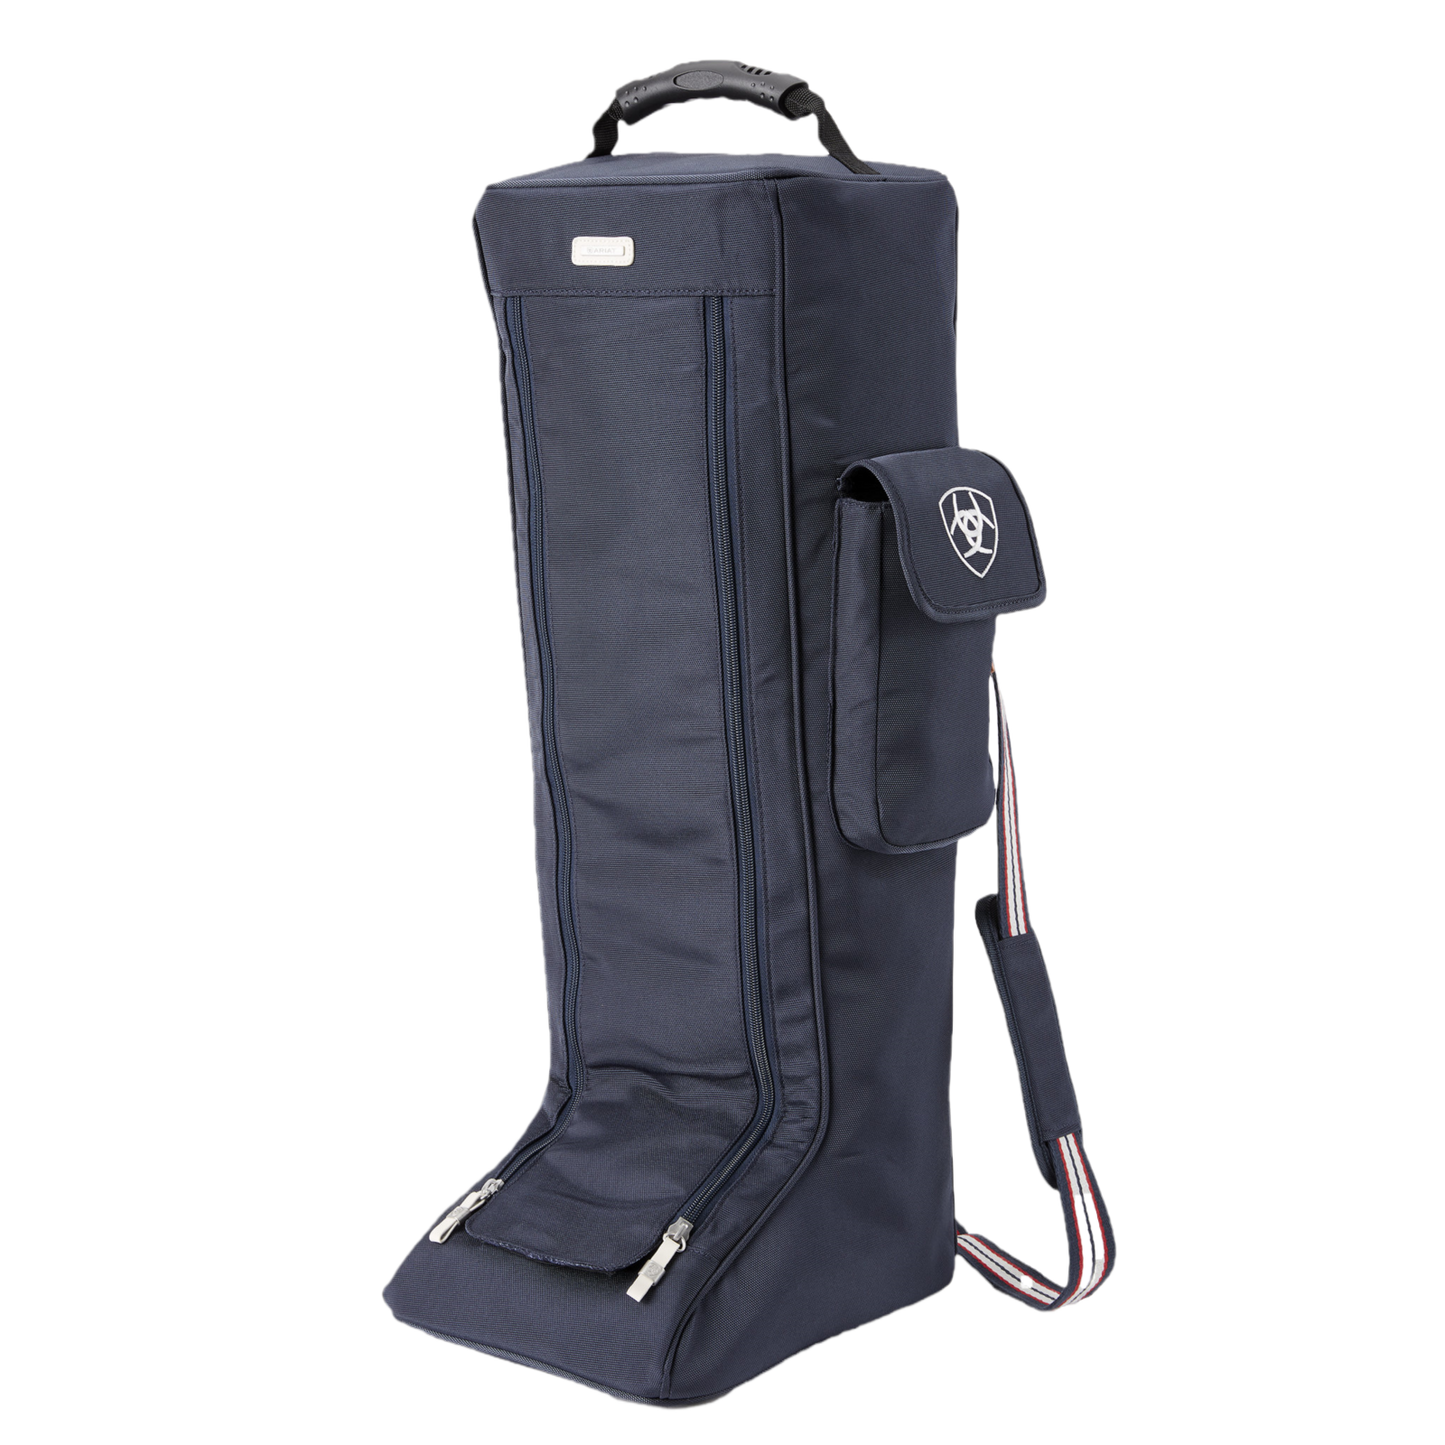 Ariat® Team Tall Navy Zip Up Boot Bag 10021087